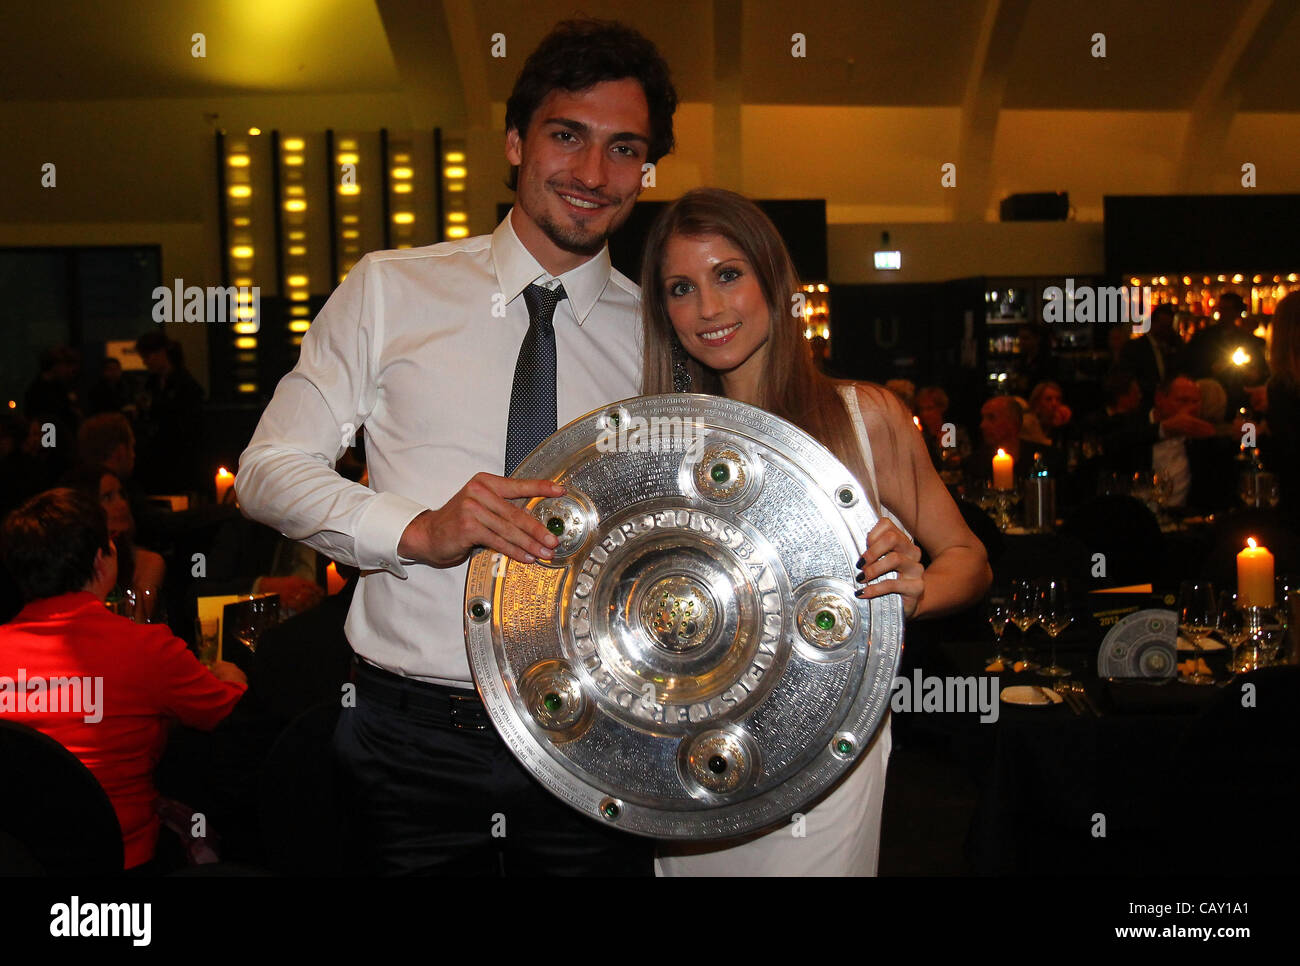 DORTMUND, Germania - 05 Maggio: Mats Hummels e la sua ragazza Cathy posano con il trofeo al ristorante vista il 5 maggio 2012 a Dortmund, Germania. Foto Stock